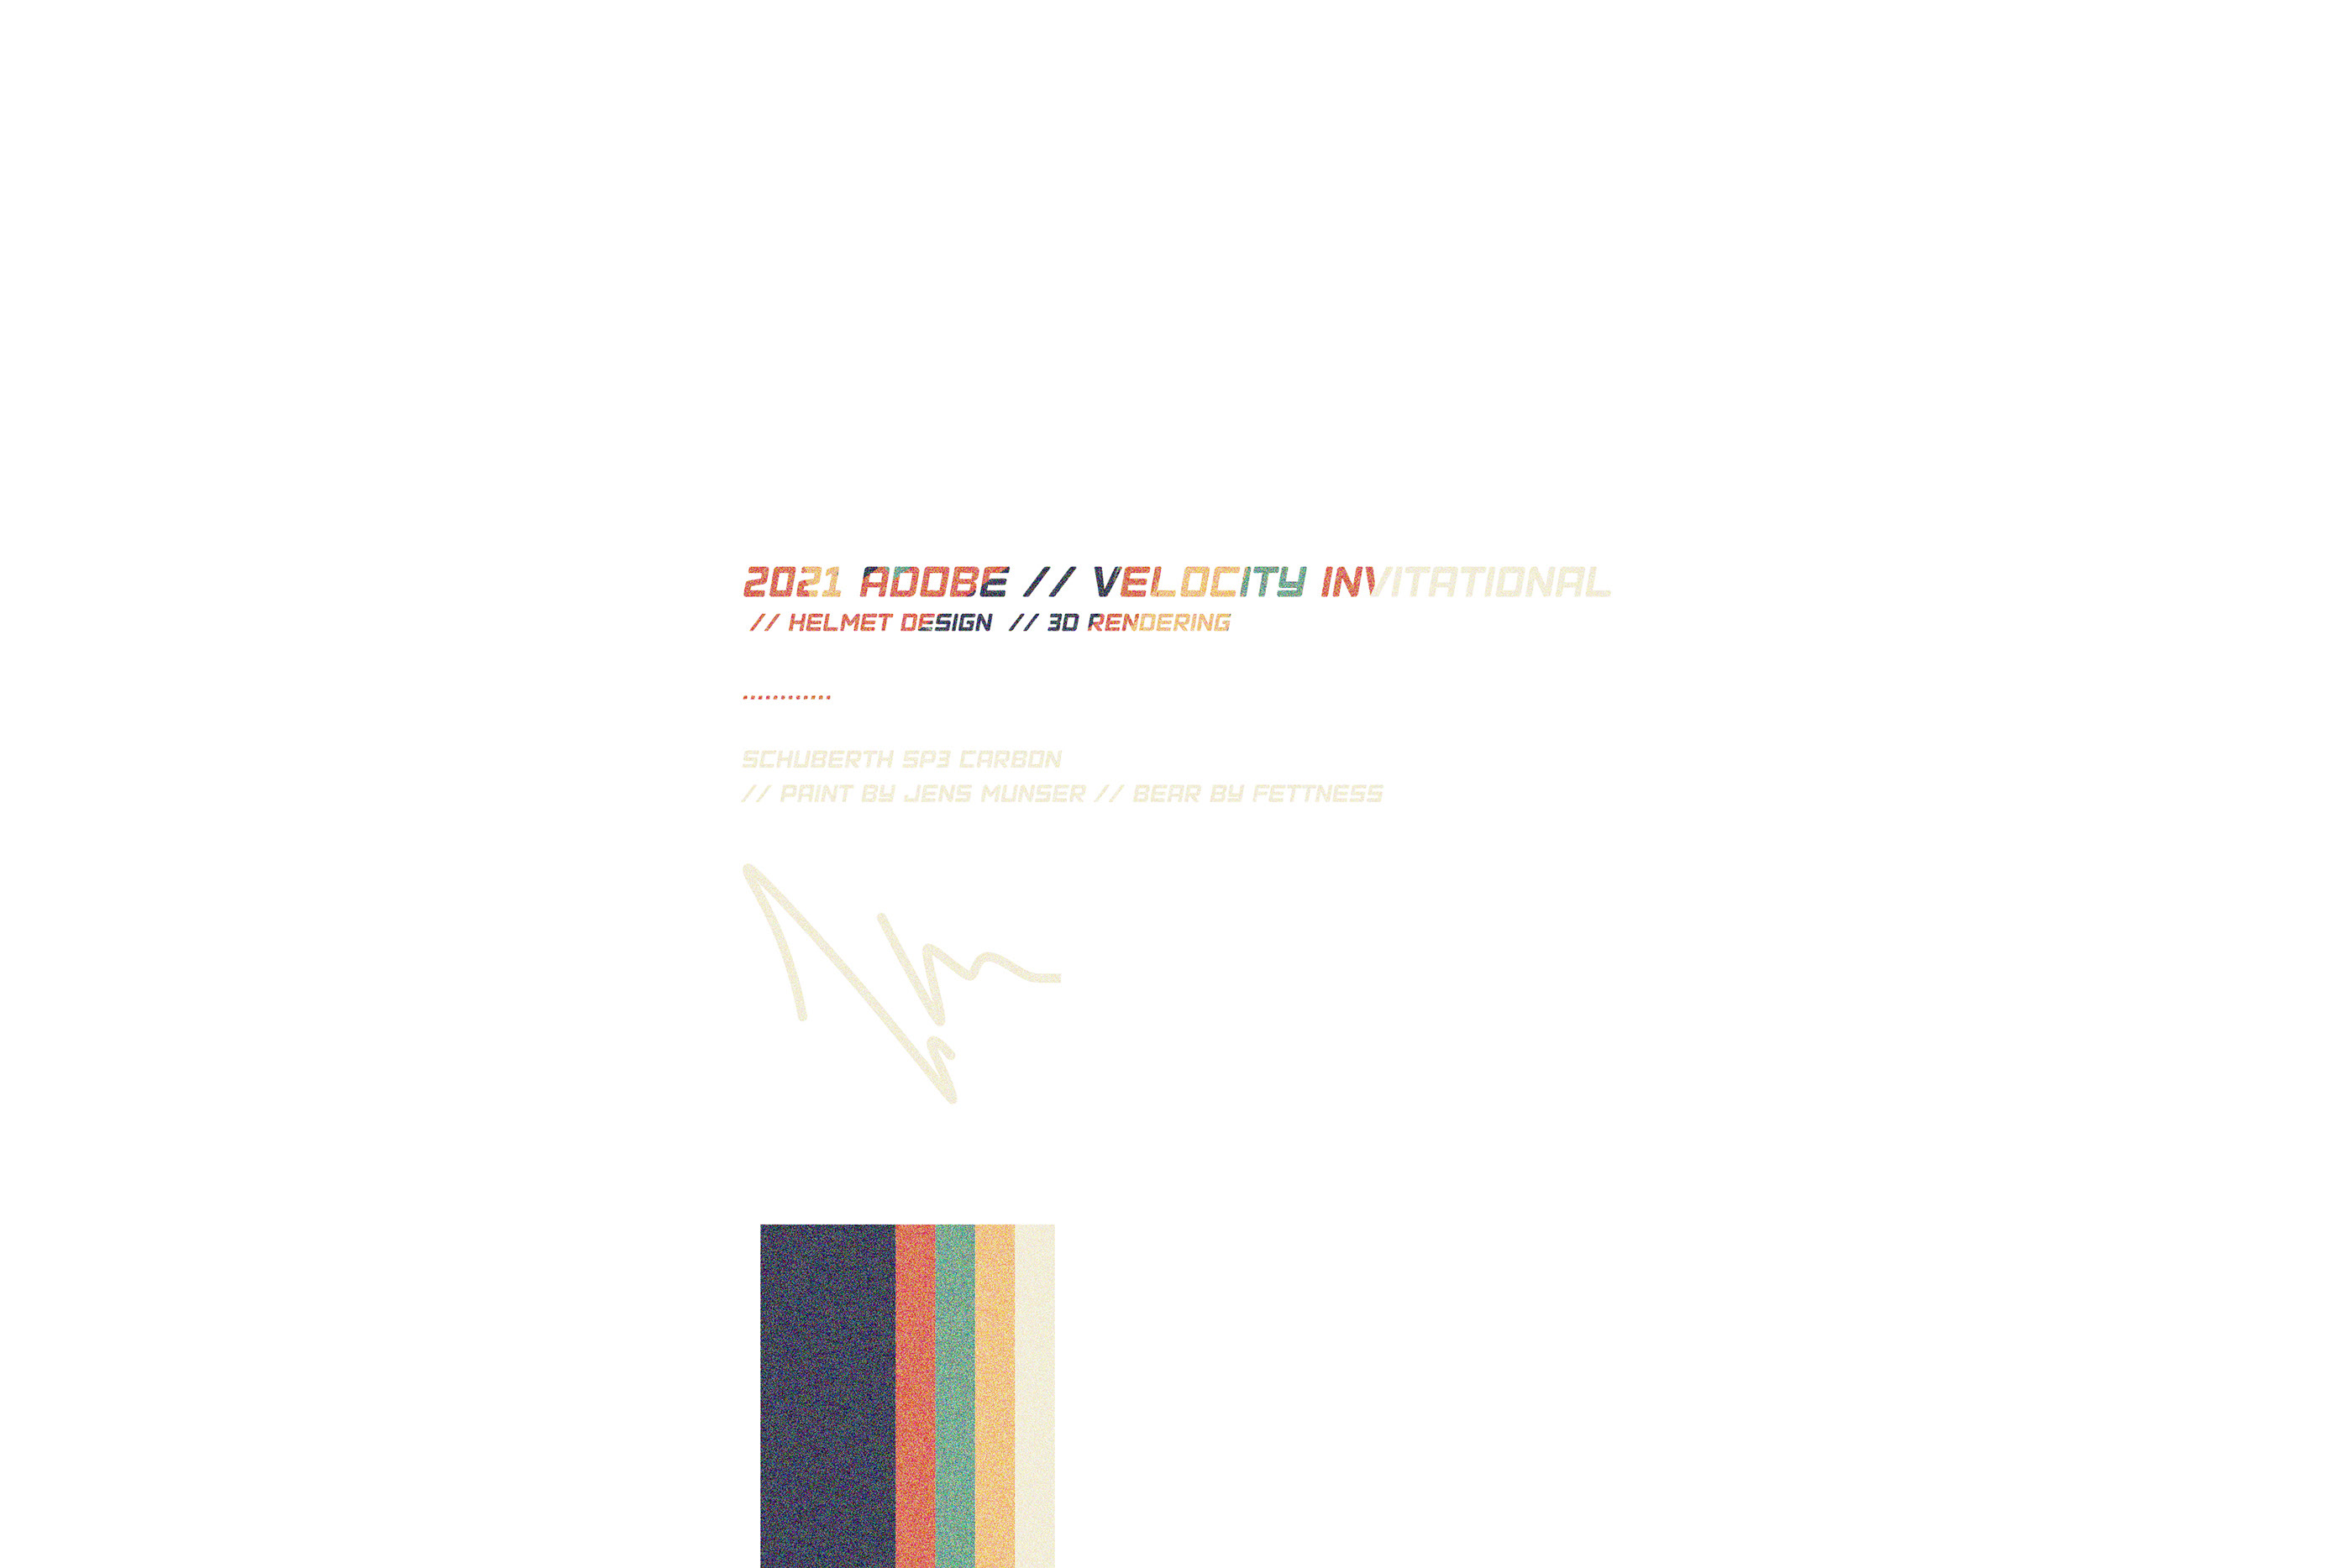 2021 Velocity Invitaional // Adobe Studios